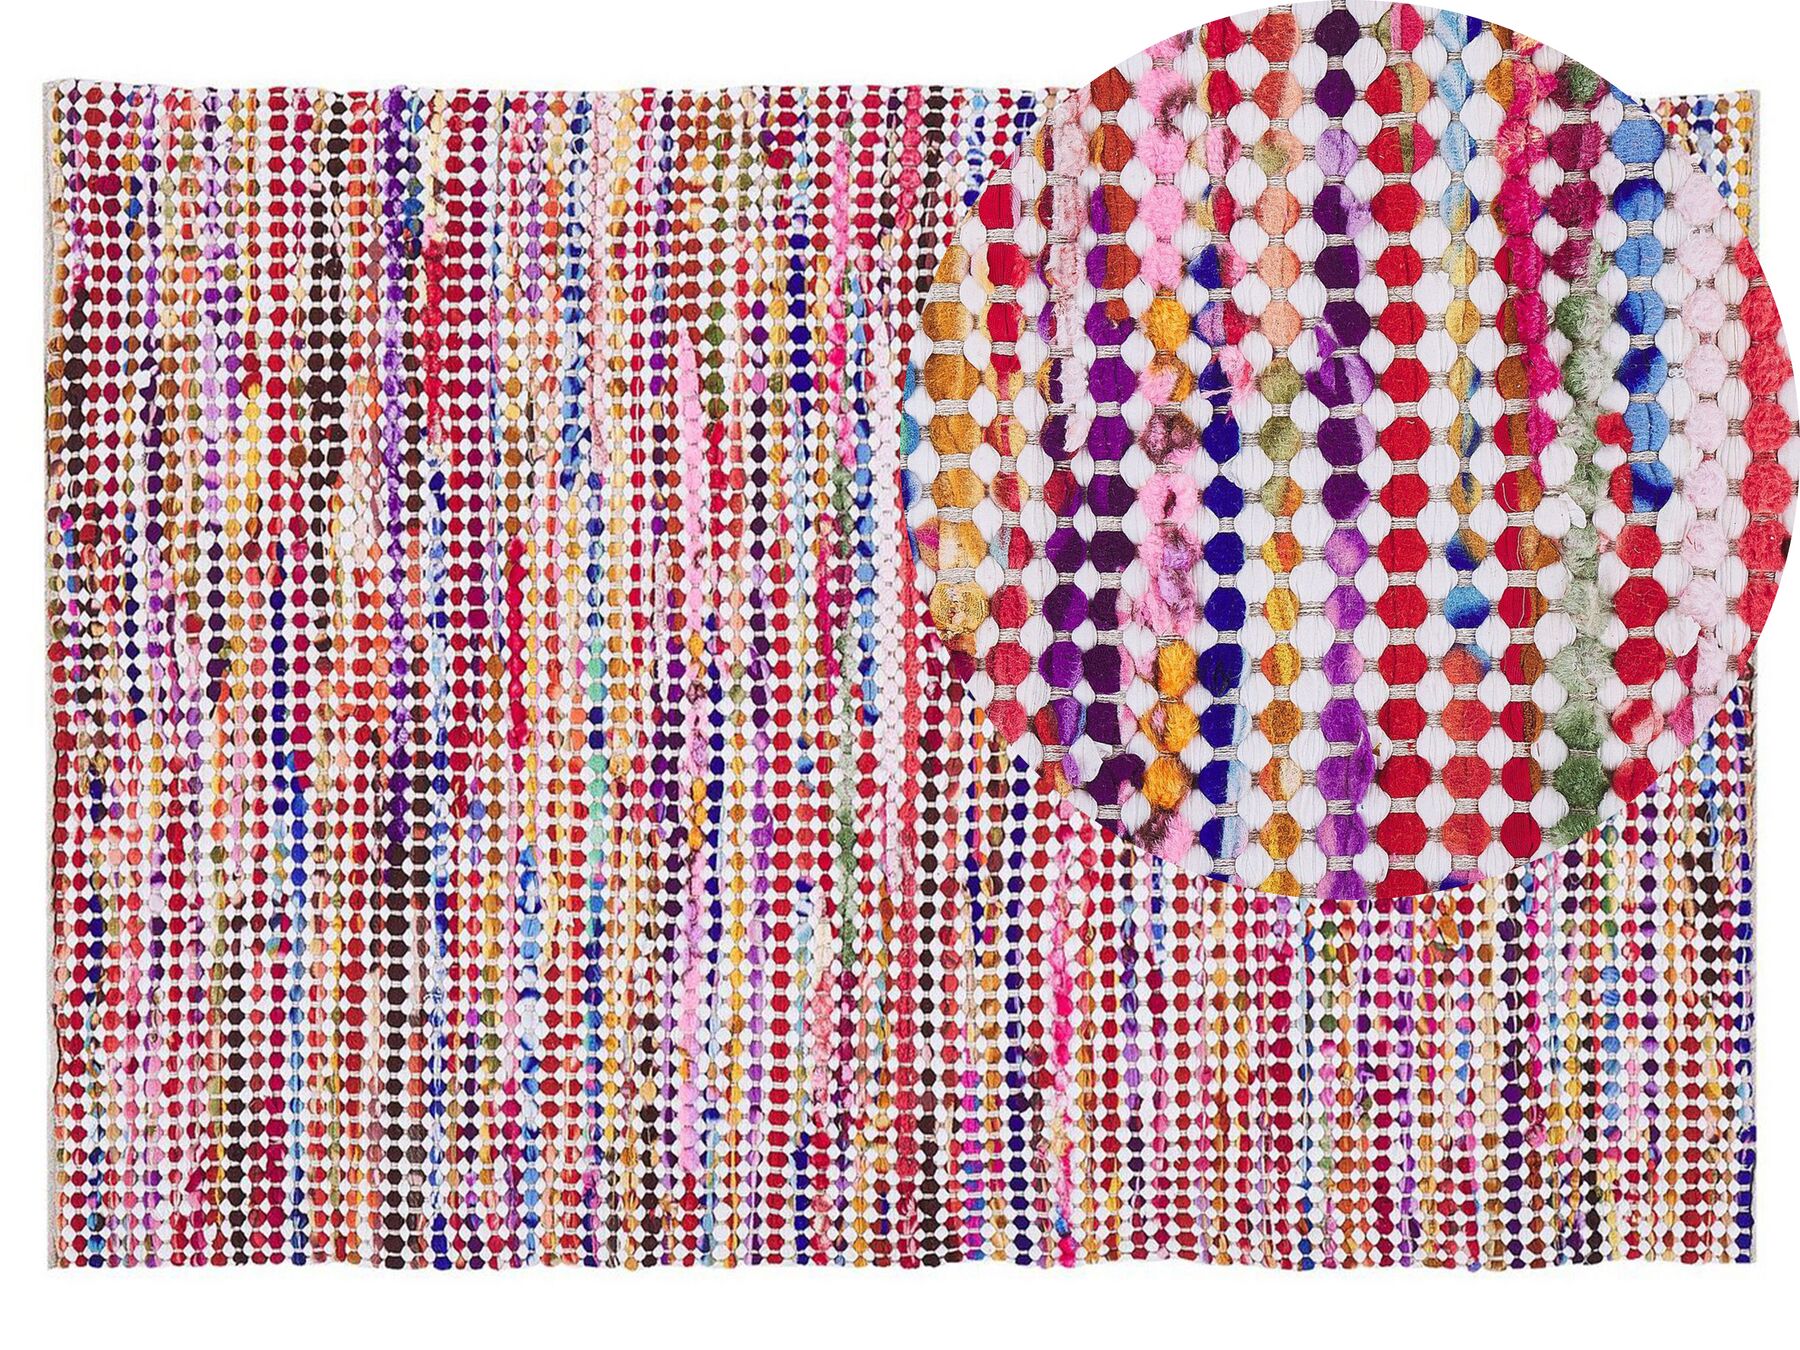 Teppich bunt 140 x 200 cm abstraktes Muster Kurzflor BELEN_520402